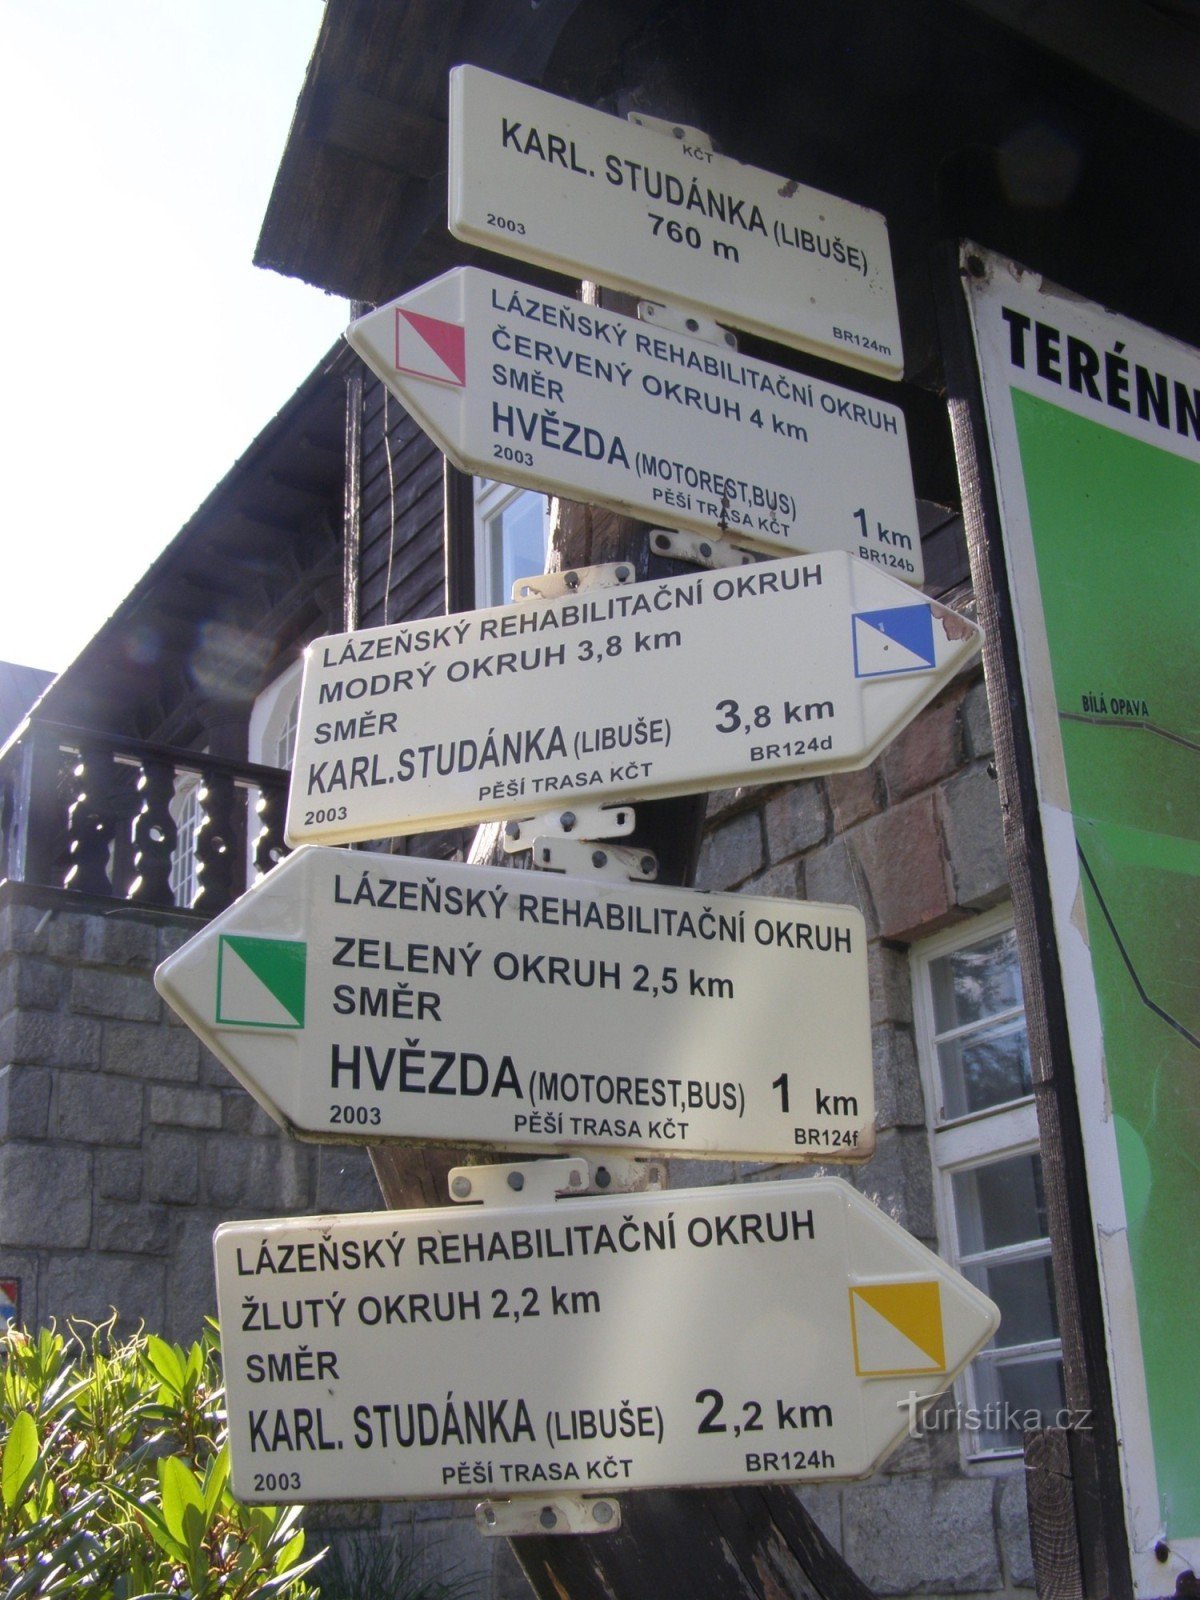 τουριστικό σταυροδρόμι Karlova Studánka - Libuše